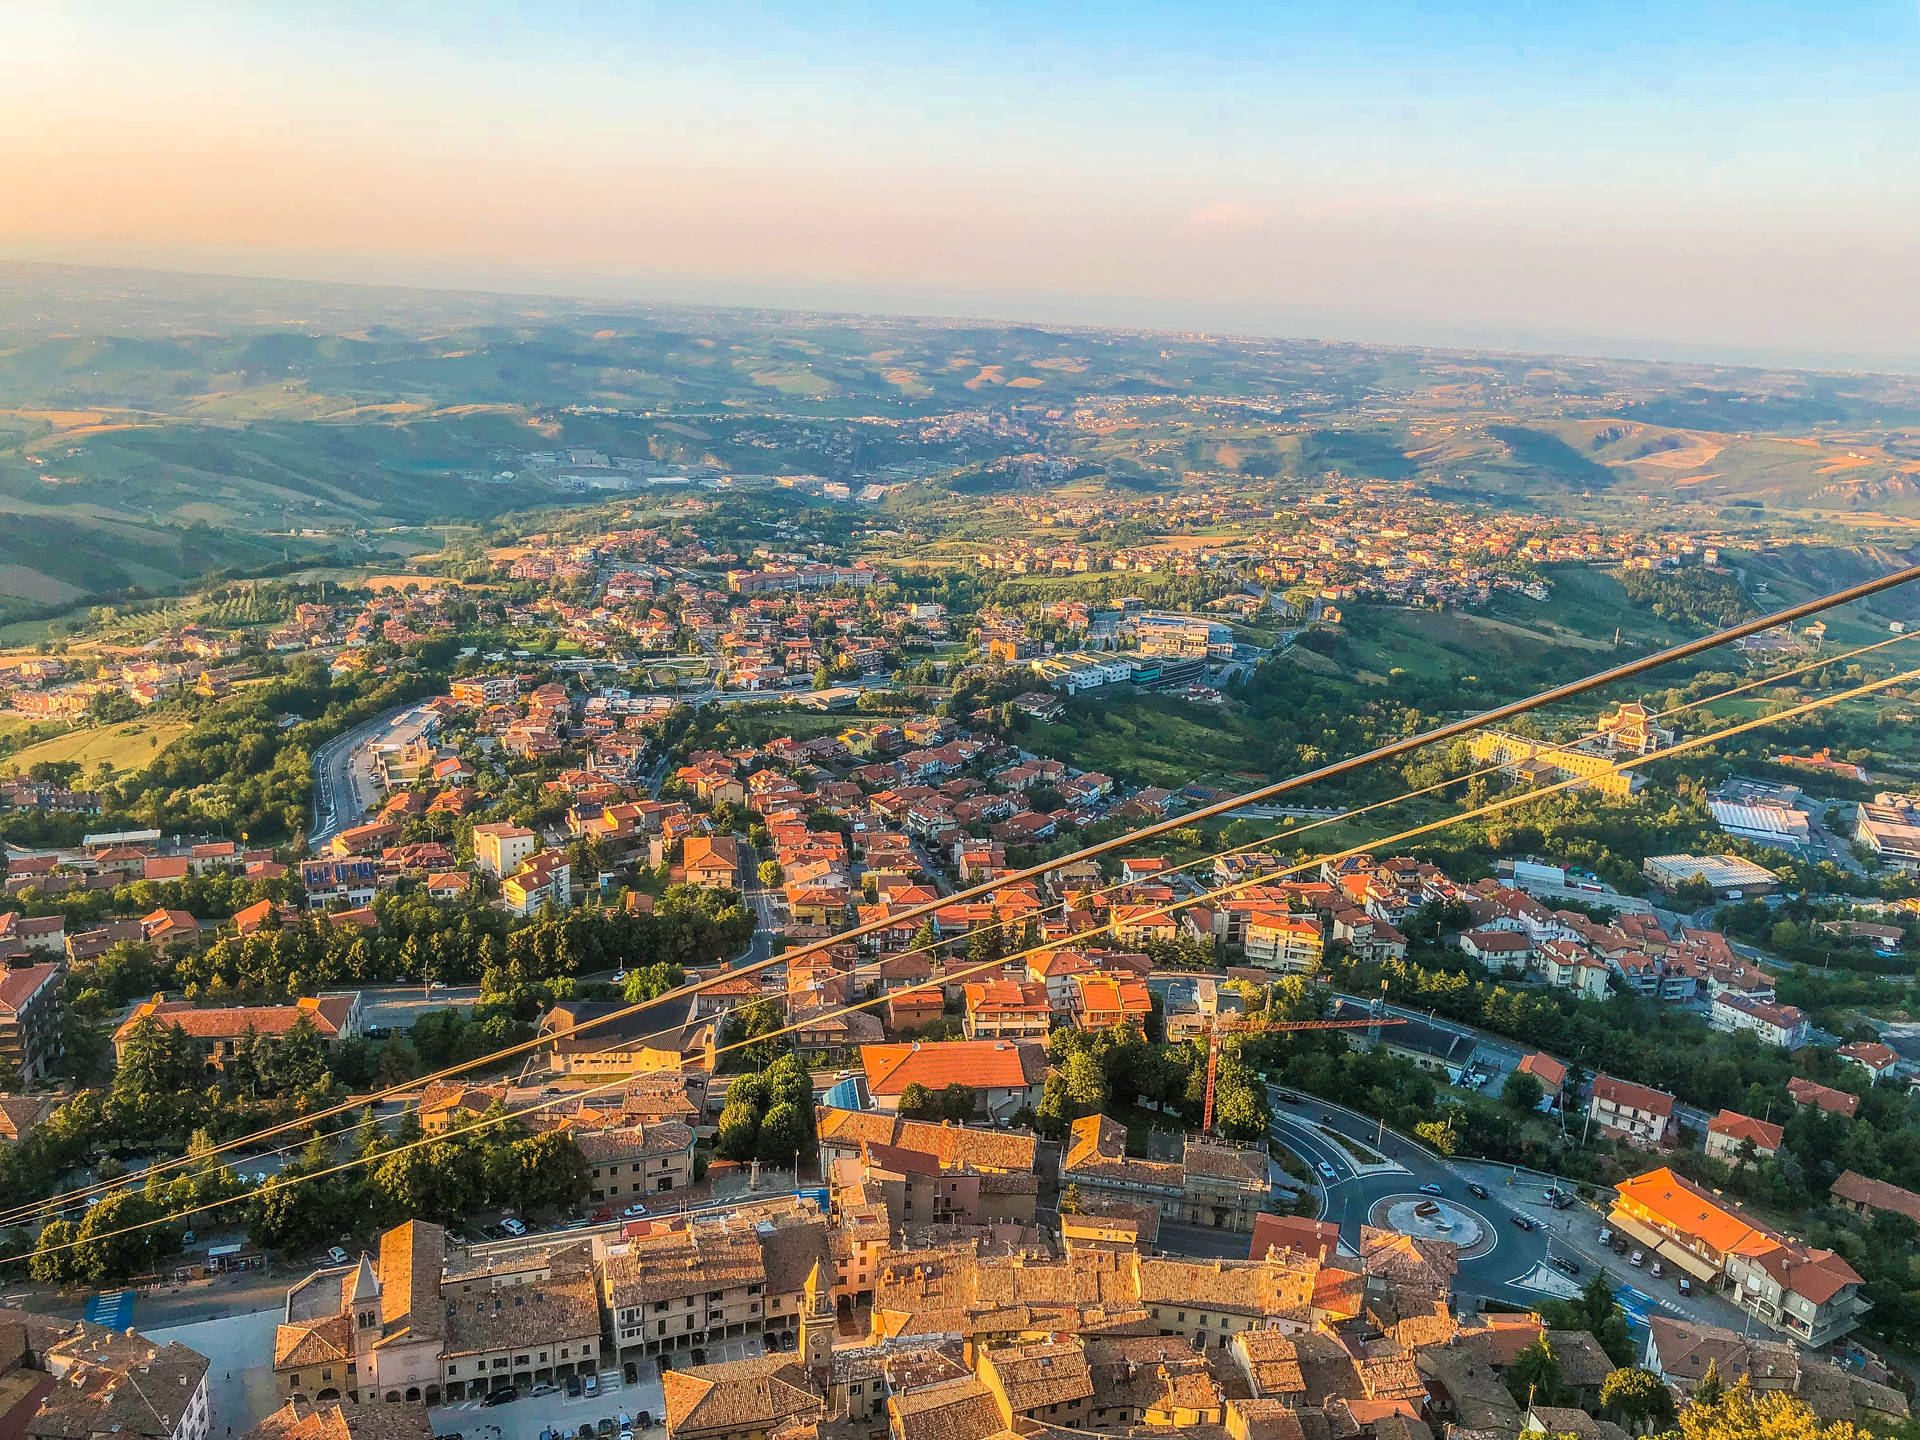 San Marino Forlì Cesena Aerial View